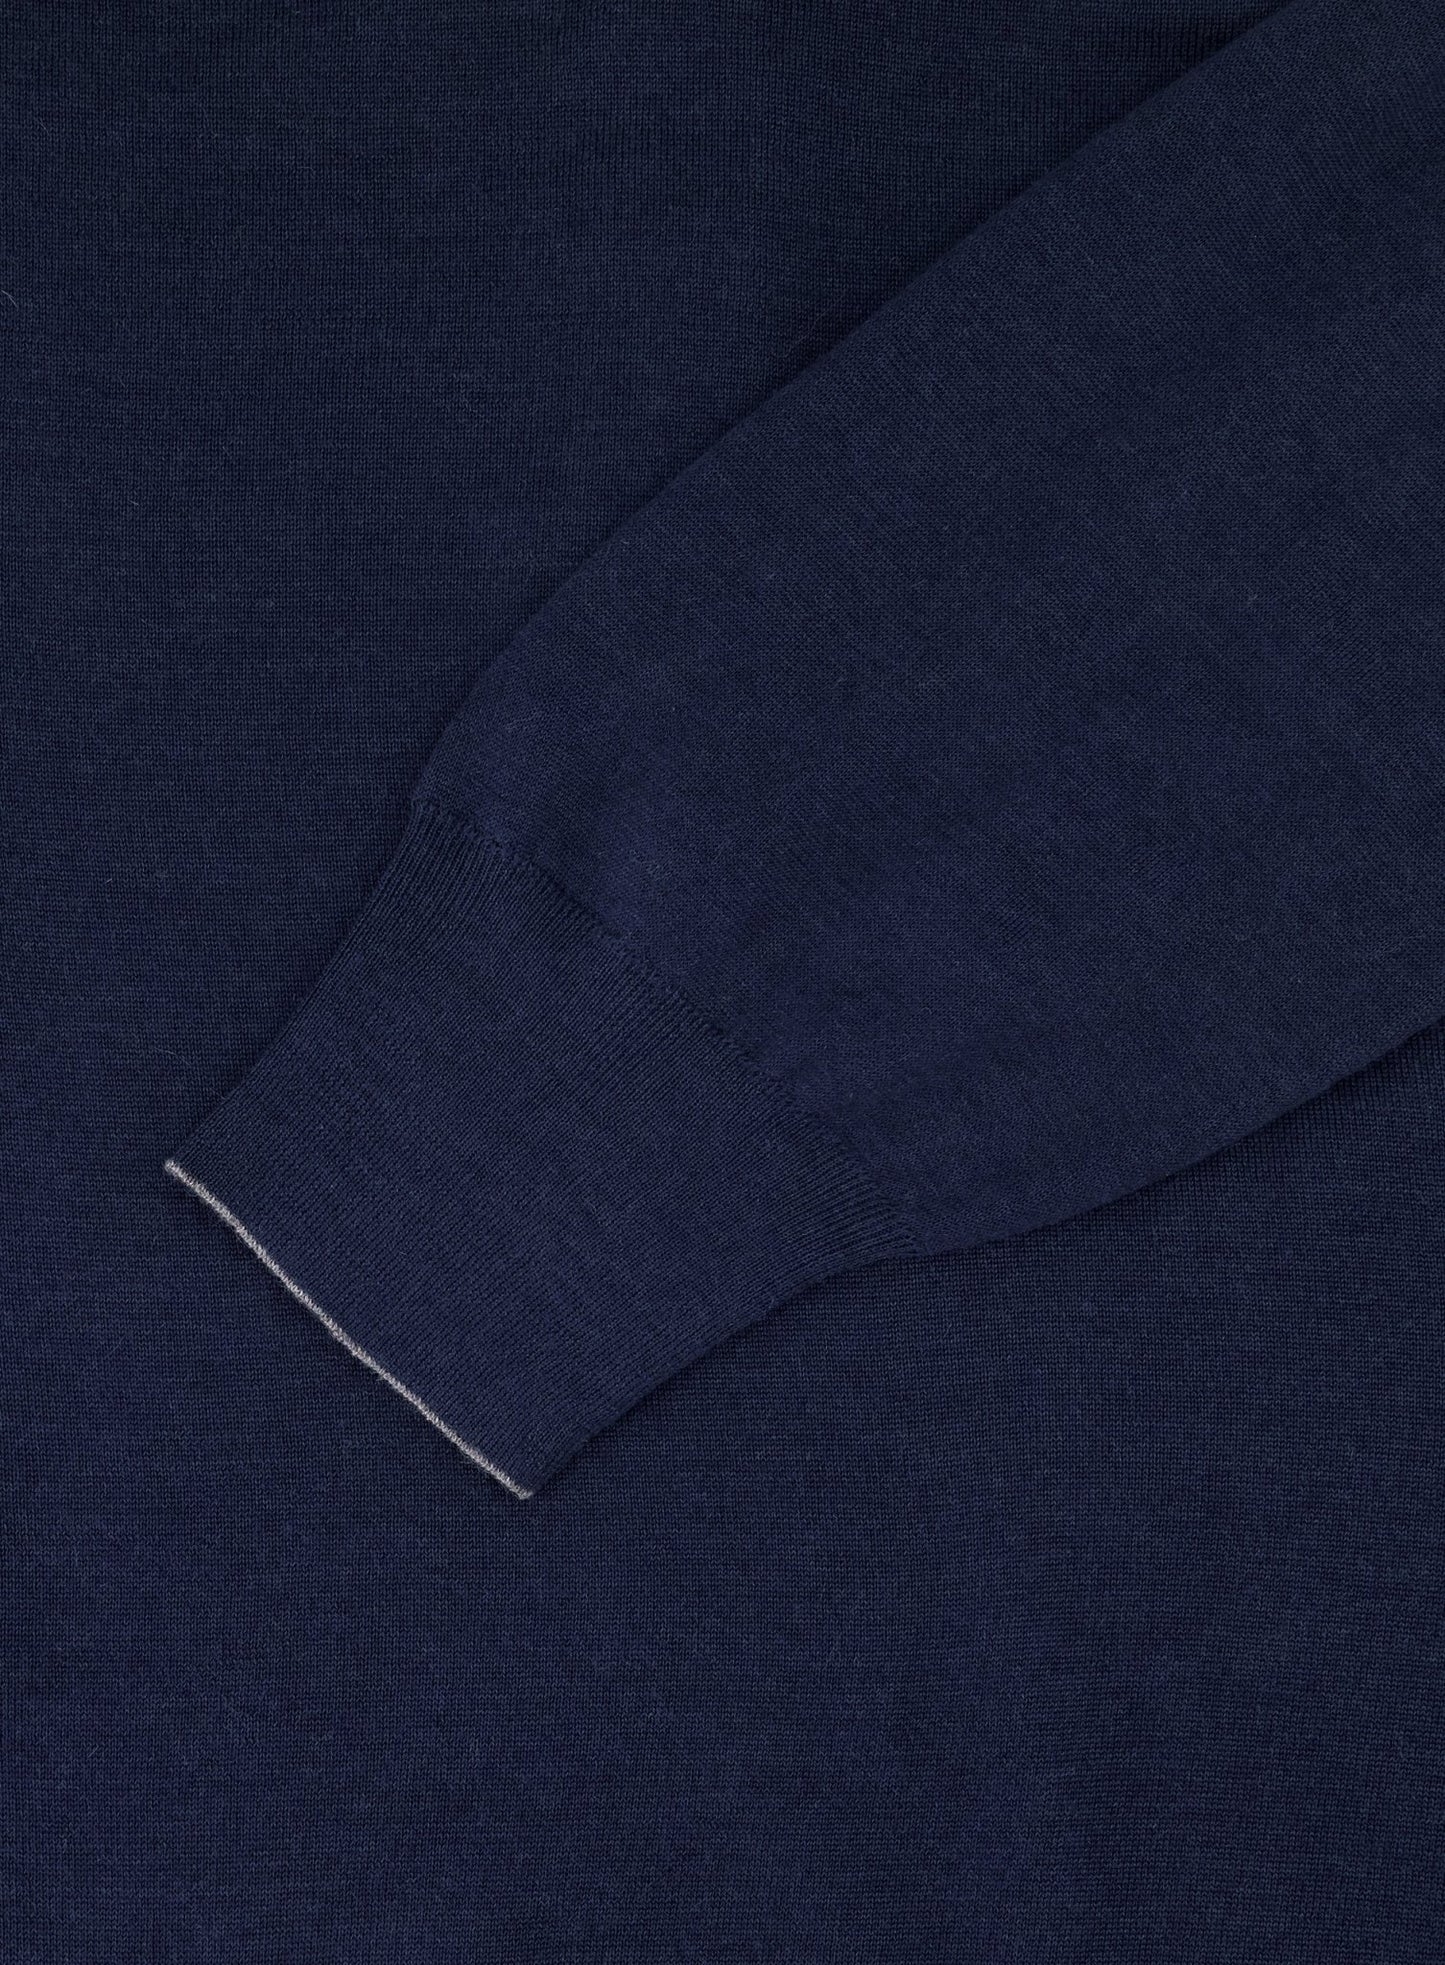 Poloshirt met lange mouwen van cashmere | Blauw